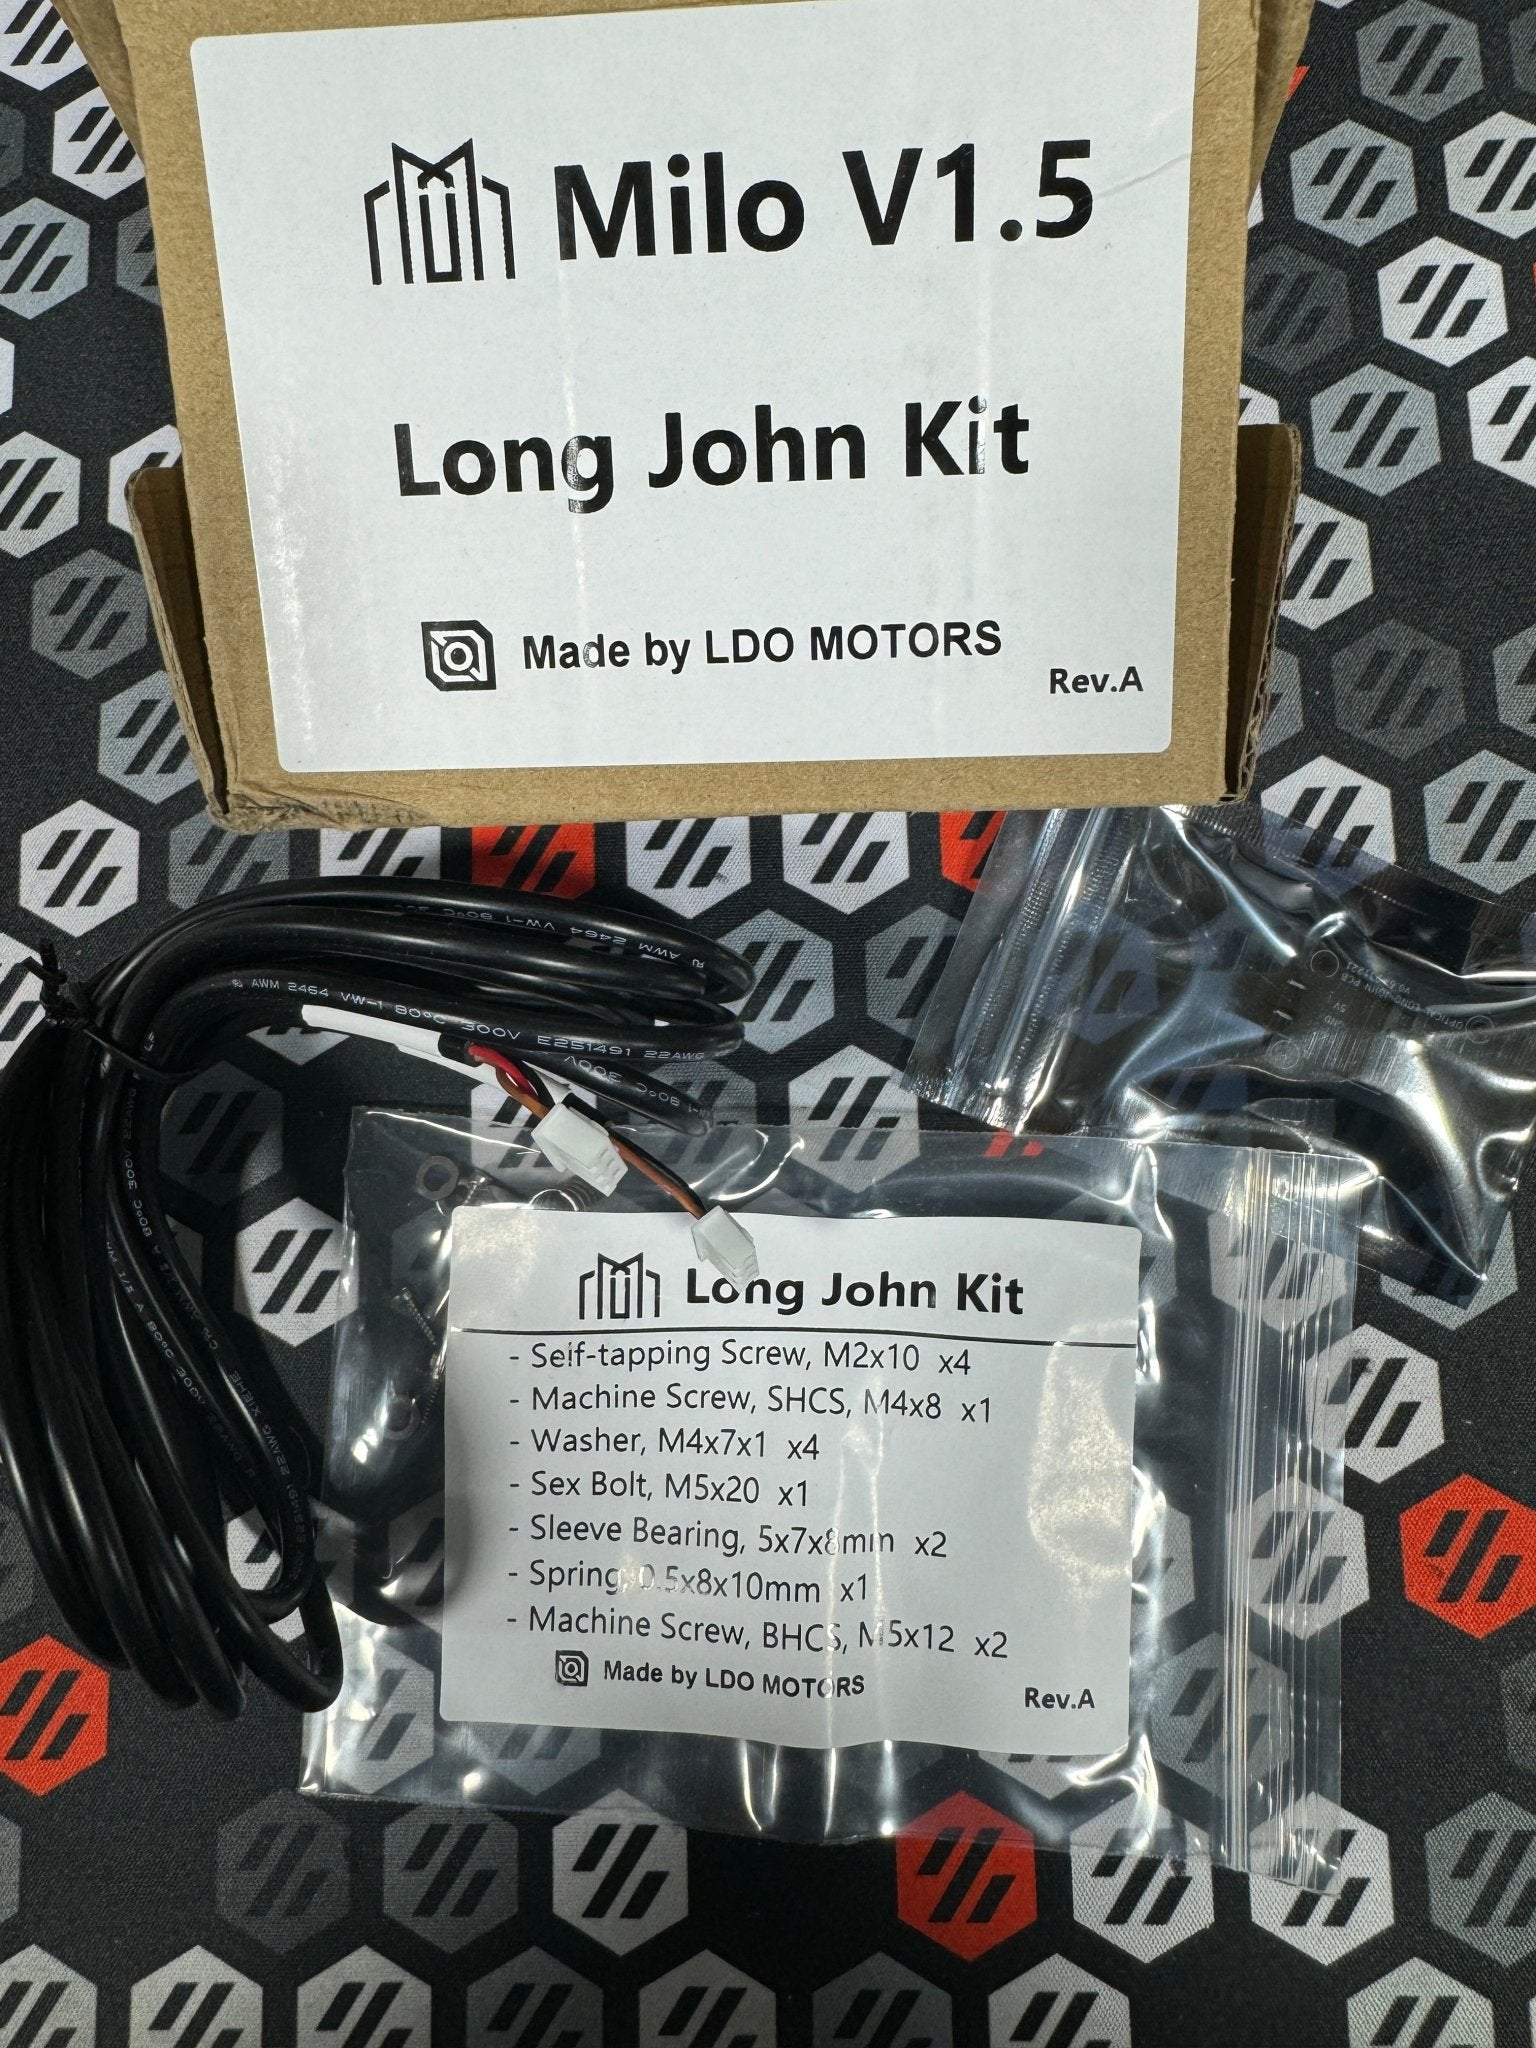 Long John Kit for Milo V1.5 CNC Machine (LDO & Millennium Machines) - West3D 3D Printing Supplies - LDO Motors